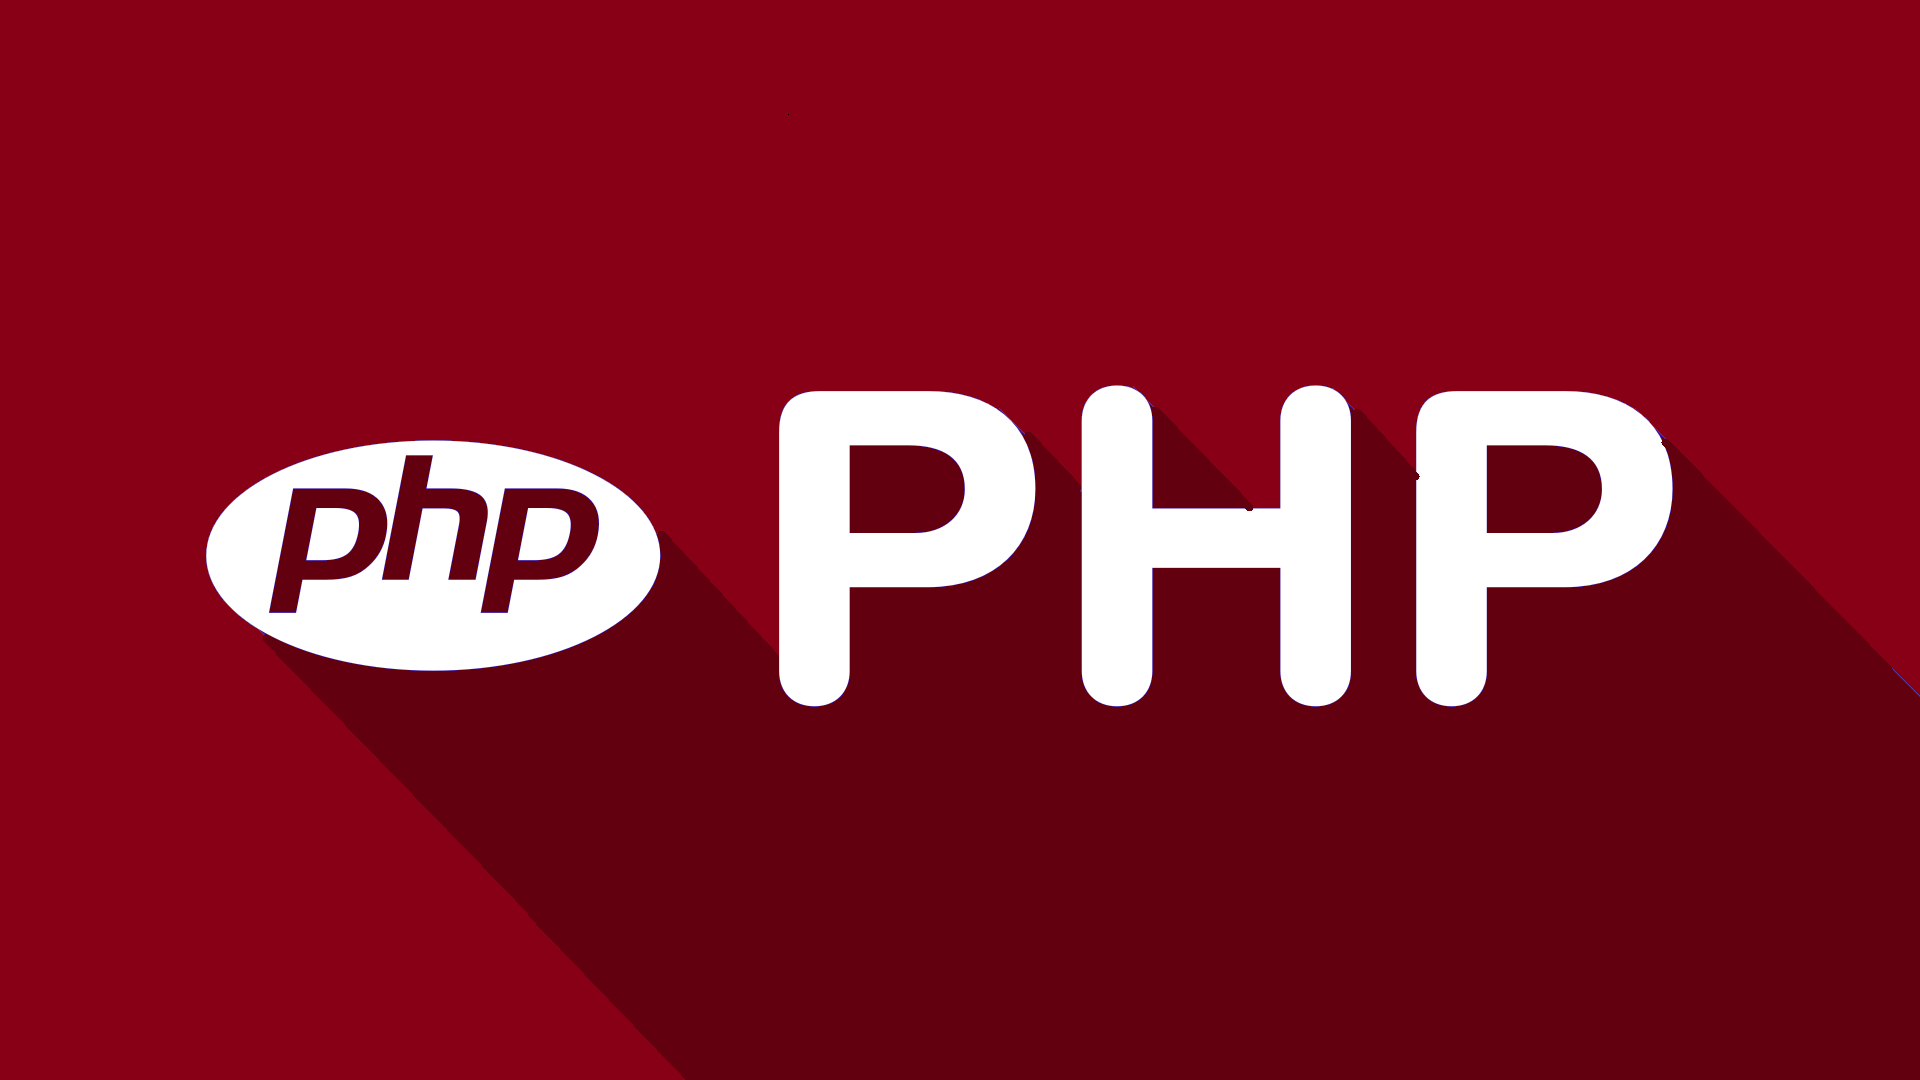 Php unique. Php. Php лого. Php язык программирования логотип. Php картинка.